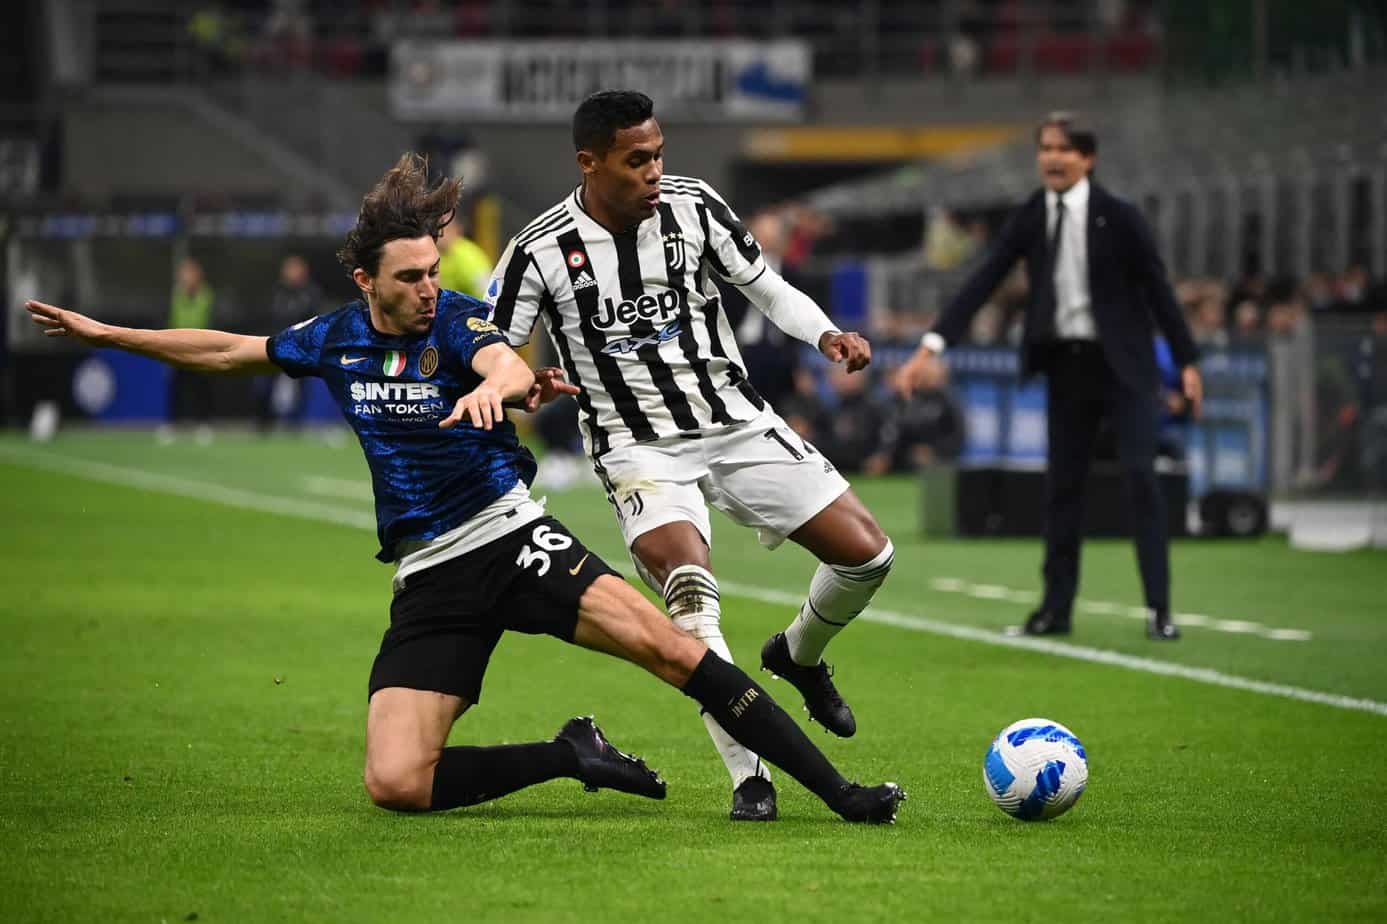 Cuotas de Apuestas entre Juventus e Inter y Pronósticos Gratis